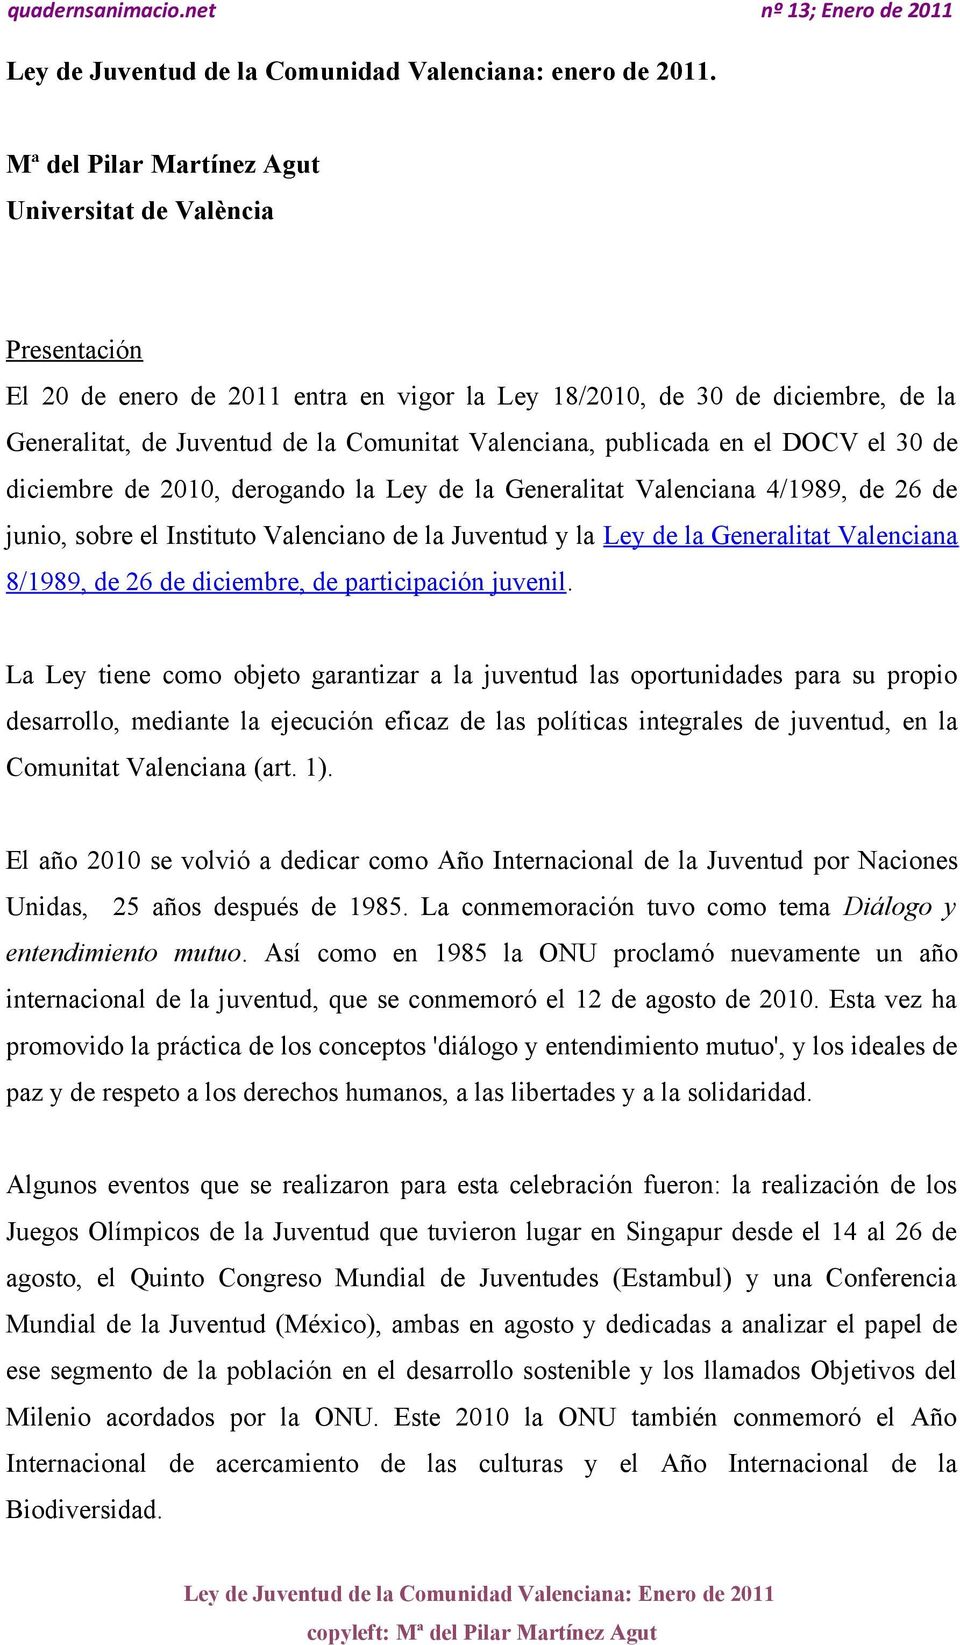 publicada en el DOCV el 30 de diciembre de 2010, derogando la Ley de la Generalitat Valenciana 4/1989, de 26 de junio, sobre el Instituto Valenciano de la Juventud y la Ley de la Generalitat